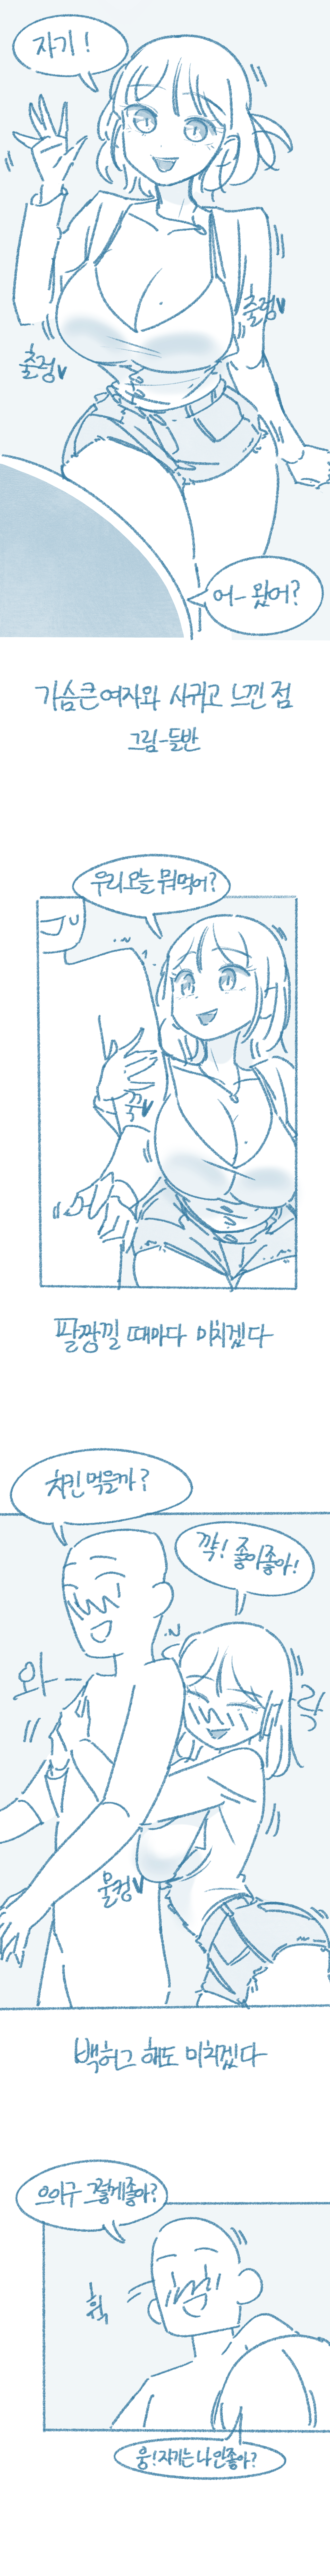 ㅇㅎ) 가슴 큰 여자와 사귀고 느낀 점.manhwa (feat. 들반)